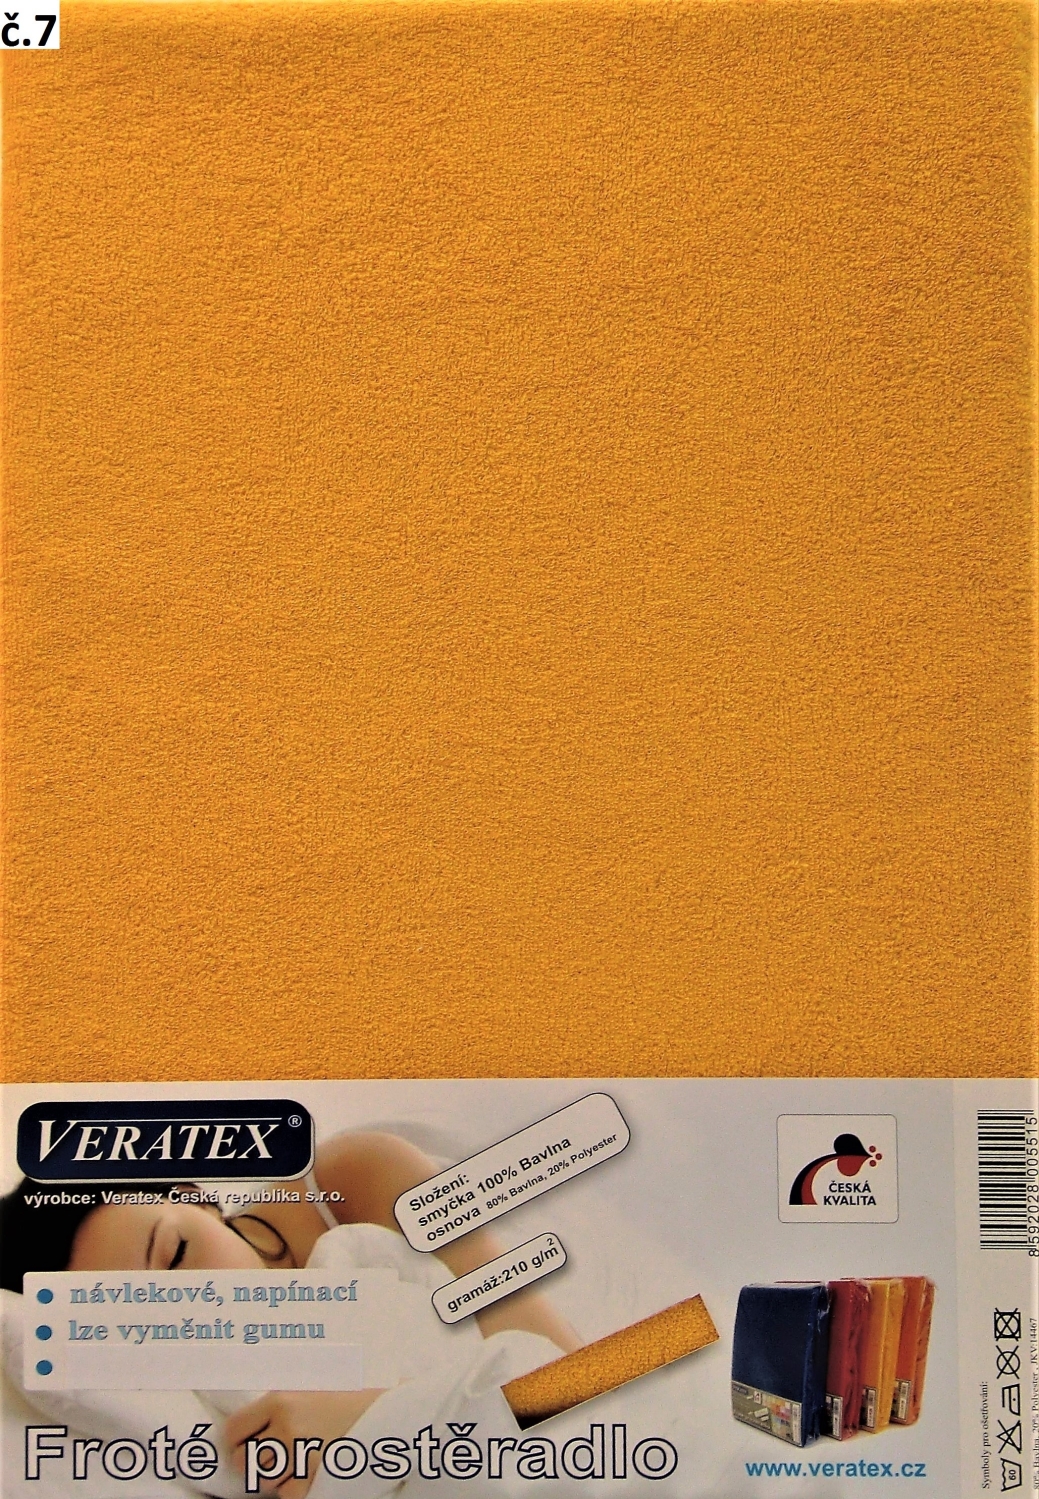 Veratex Froté prostěradlo 140x200/16 cm (č. 7-sytě žlutá)